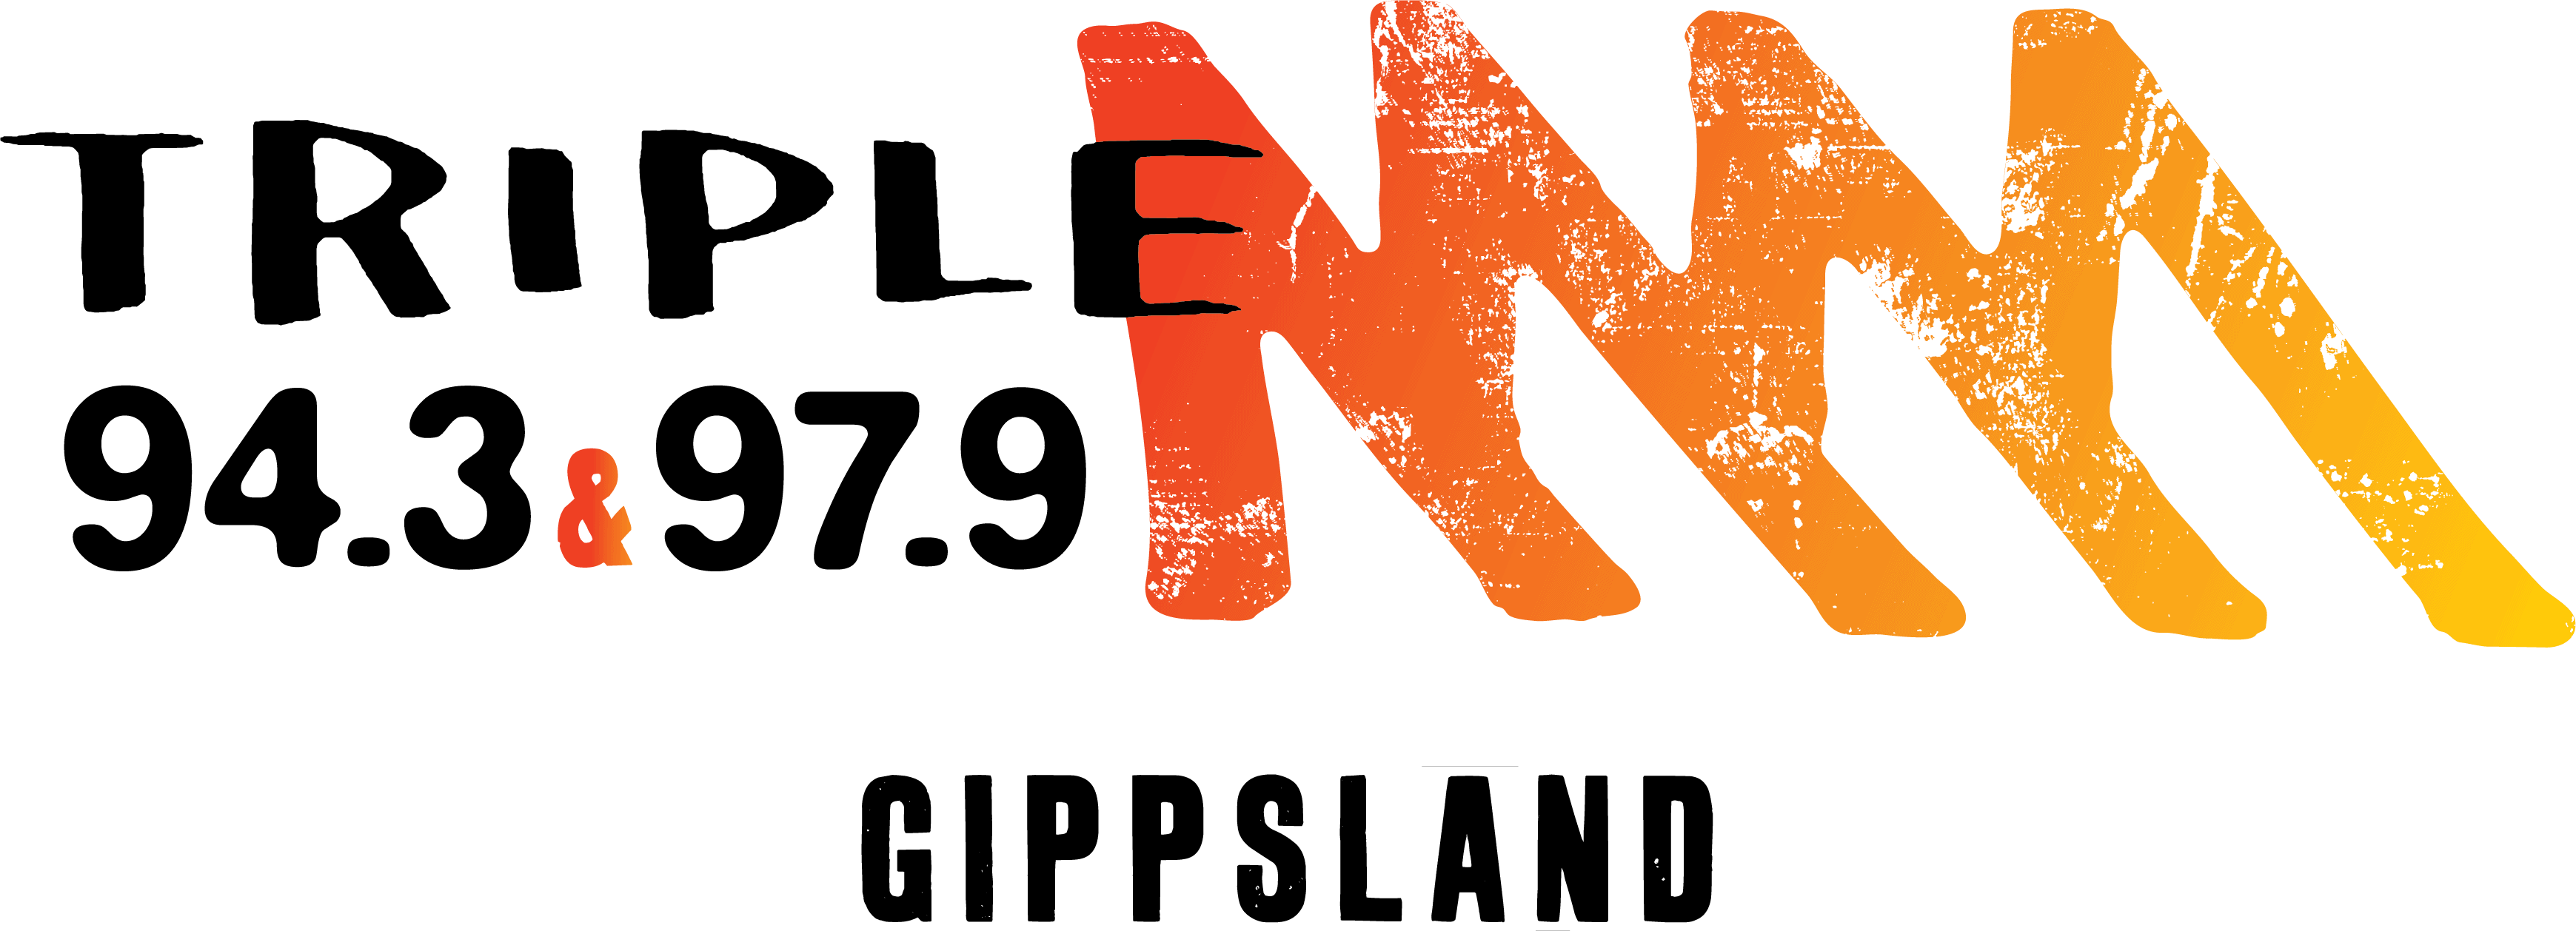 Triple M Gippsland